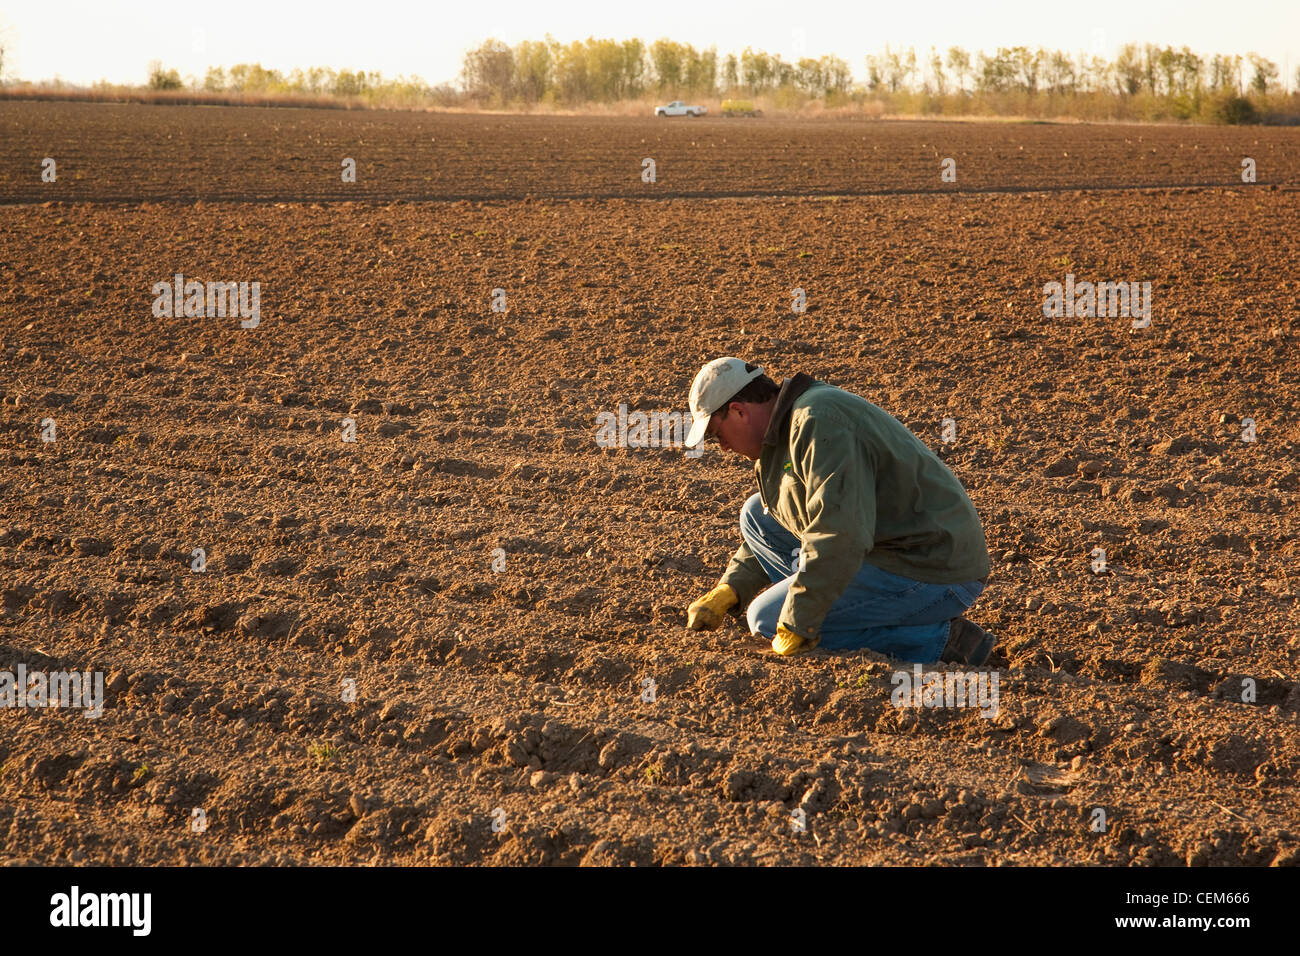 Agricoltura - un agricoltore (coltivatore) controlla la profondità di semina in un campo appena piantata con il Mais / vicino a Inghilterra, Arkansas, Stati Uniti d'America. Foto Stock